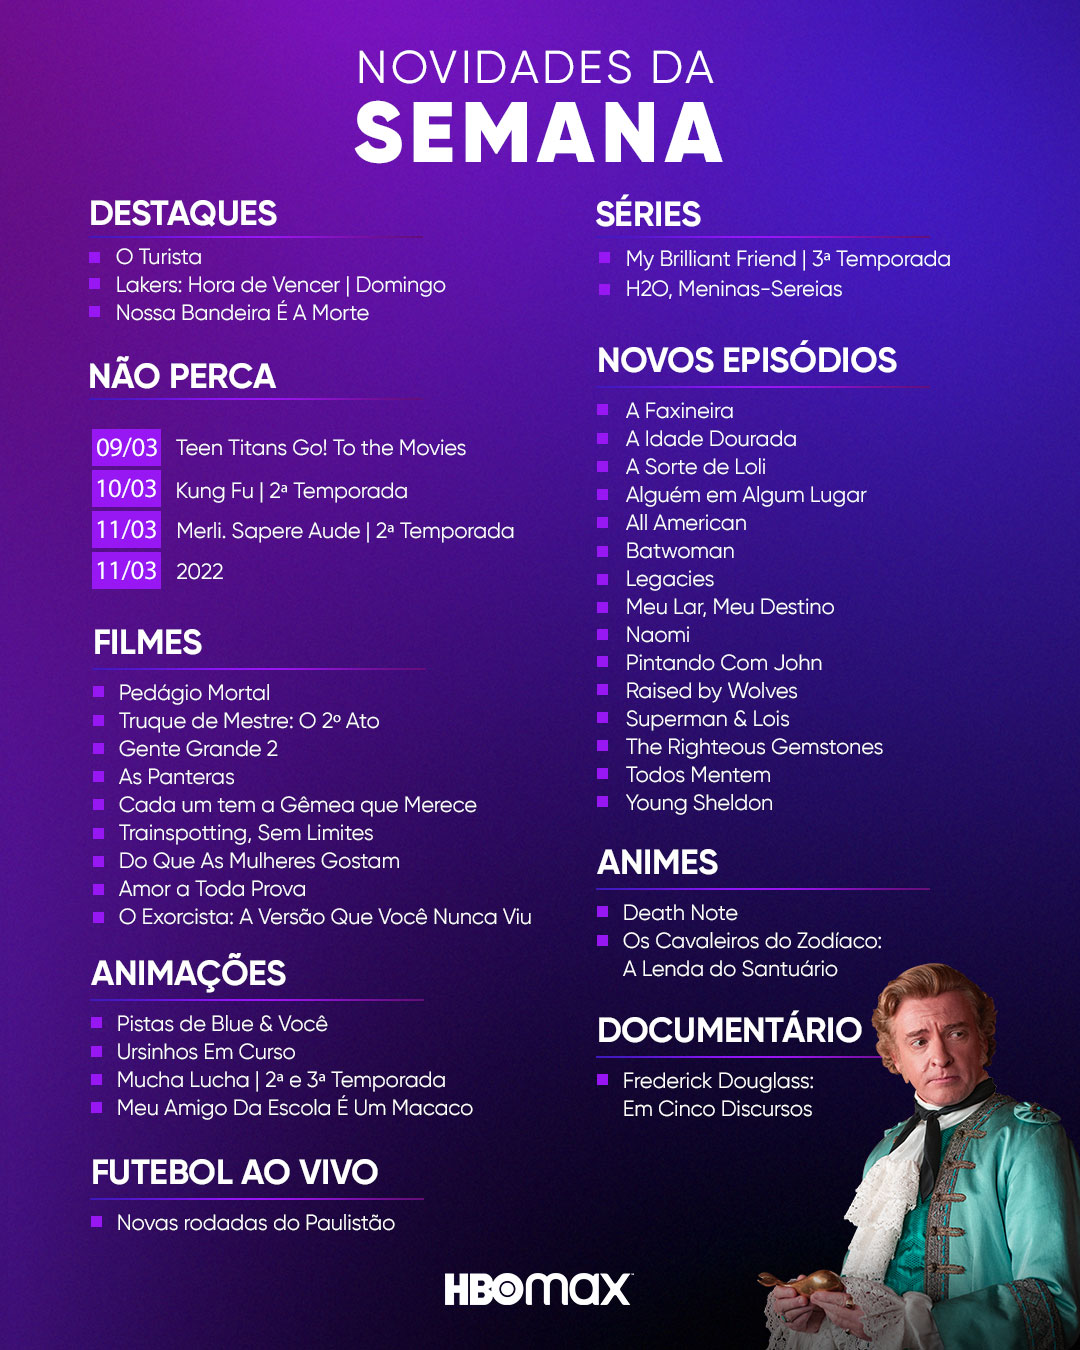 HBO Max Brasil on X: Uma lenda merece sua própria série. Conheça